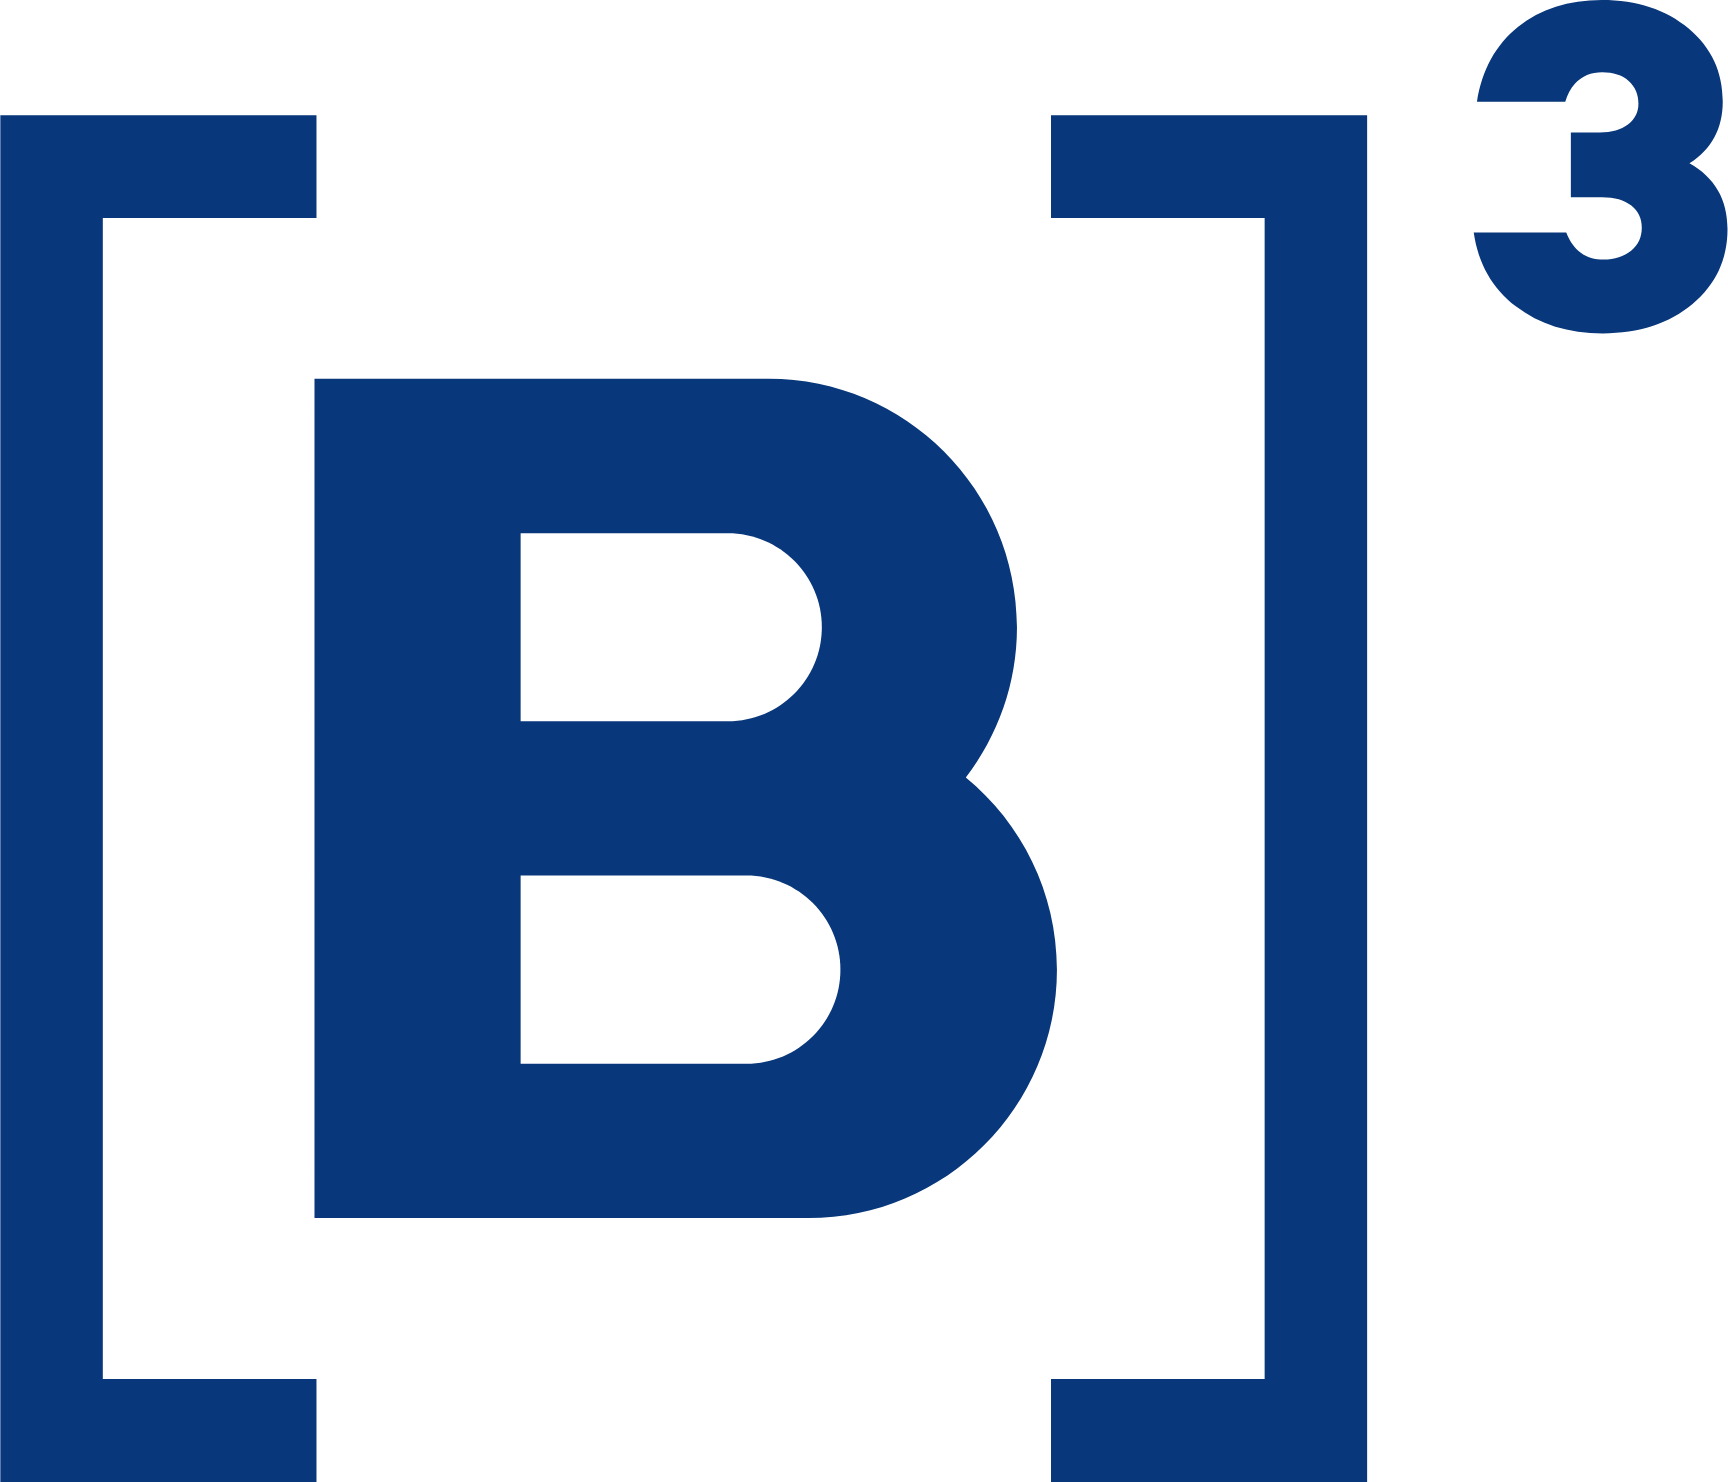 B3 logo (transparent PNG)